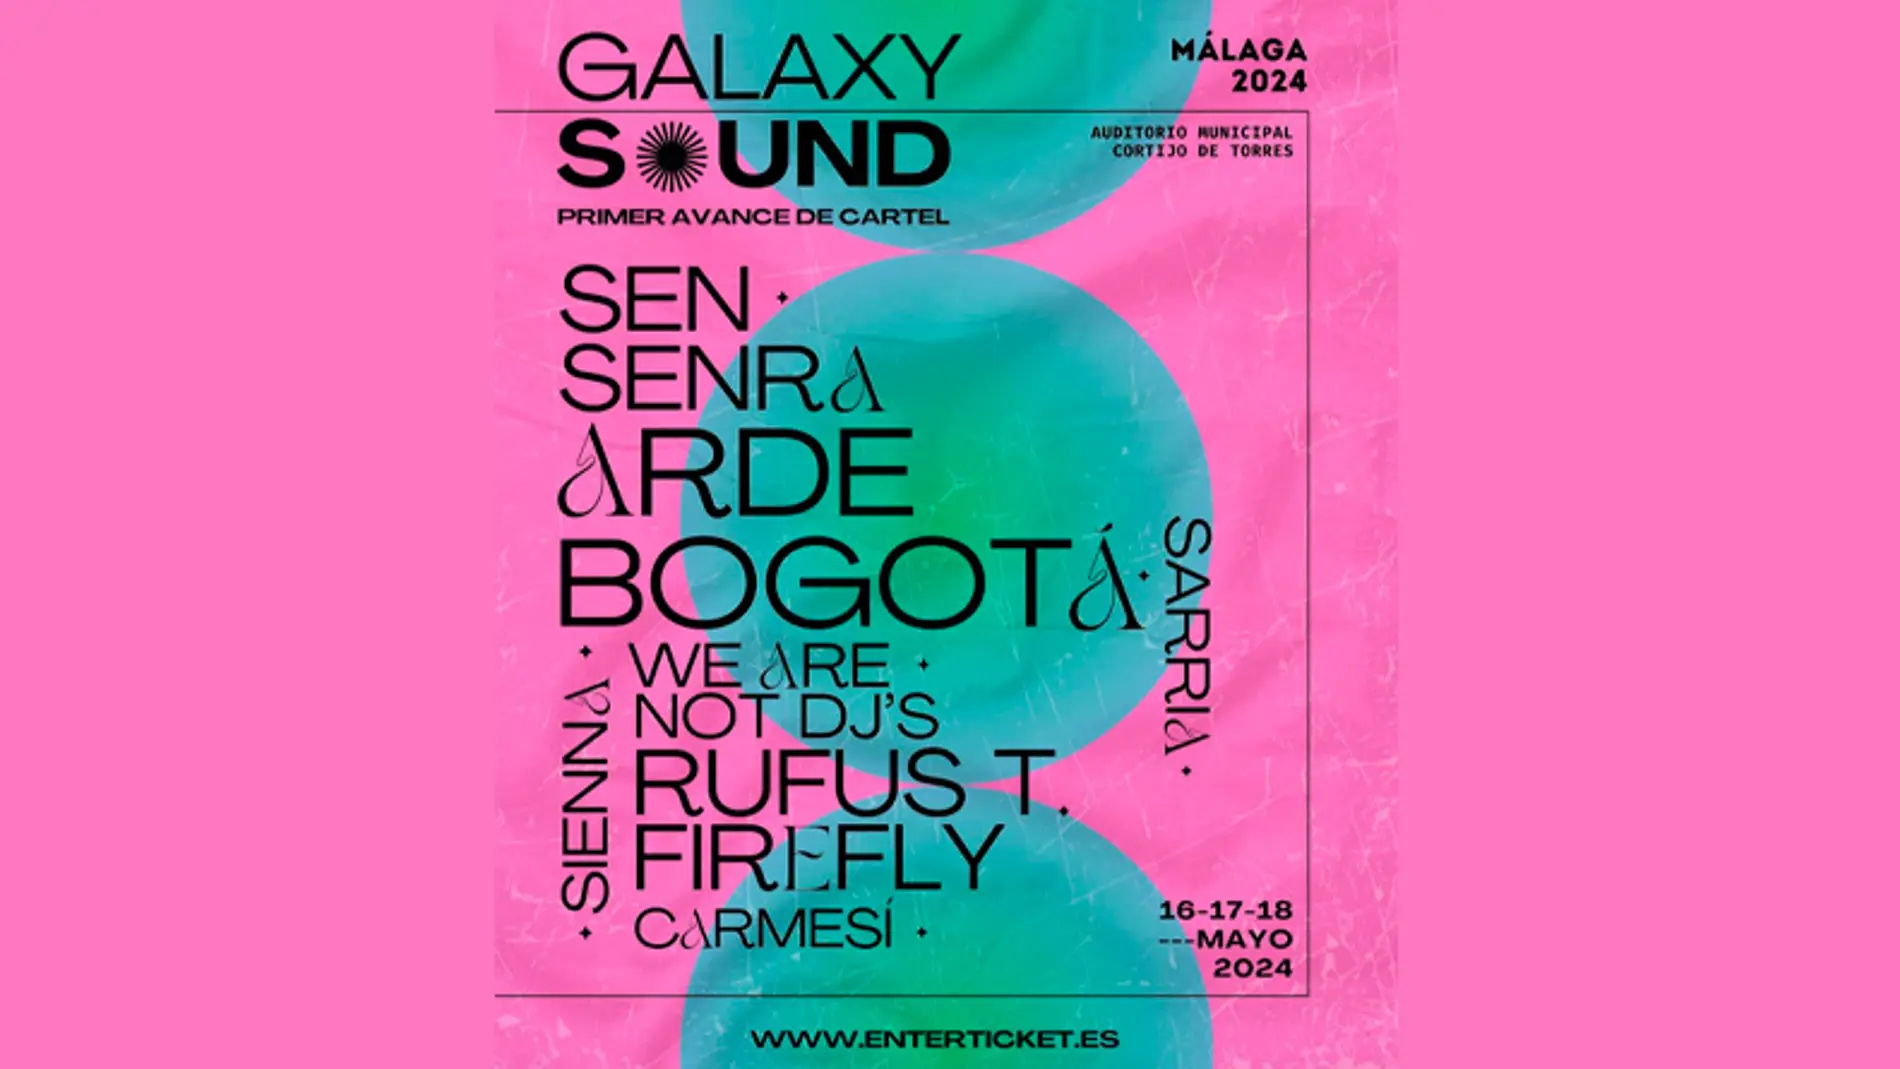 El Galaxy Sound arranca en una semana la temporada de festivales en Málaga 